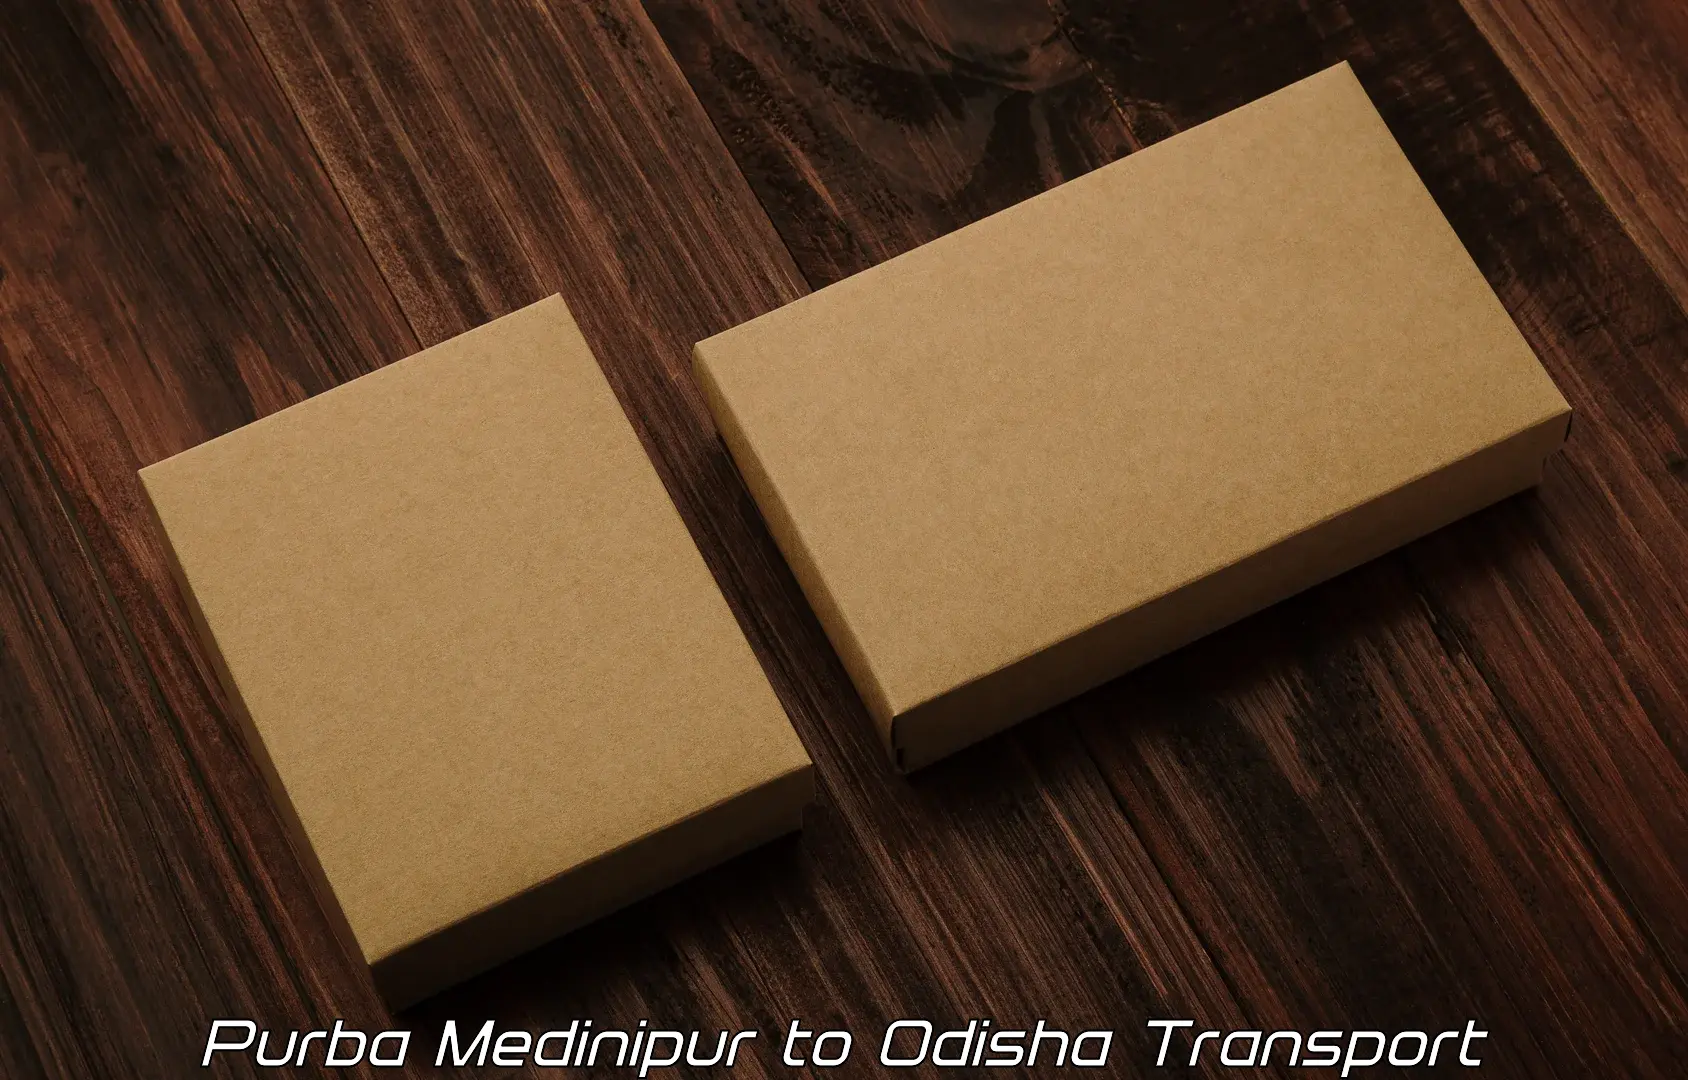 Commercial transport service Purba Medinipur to Kosagumuda